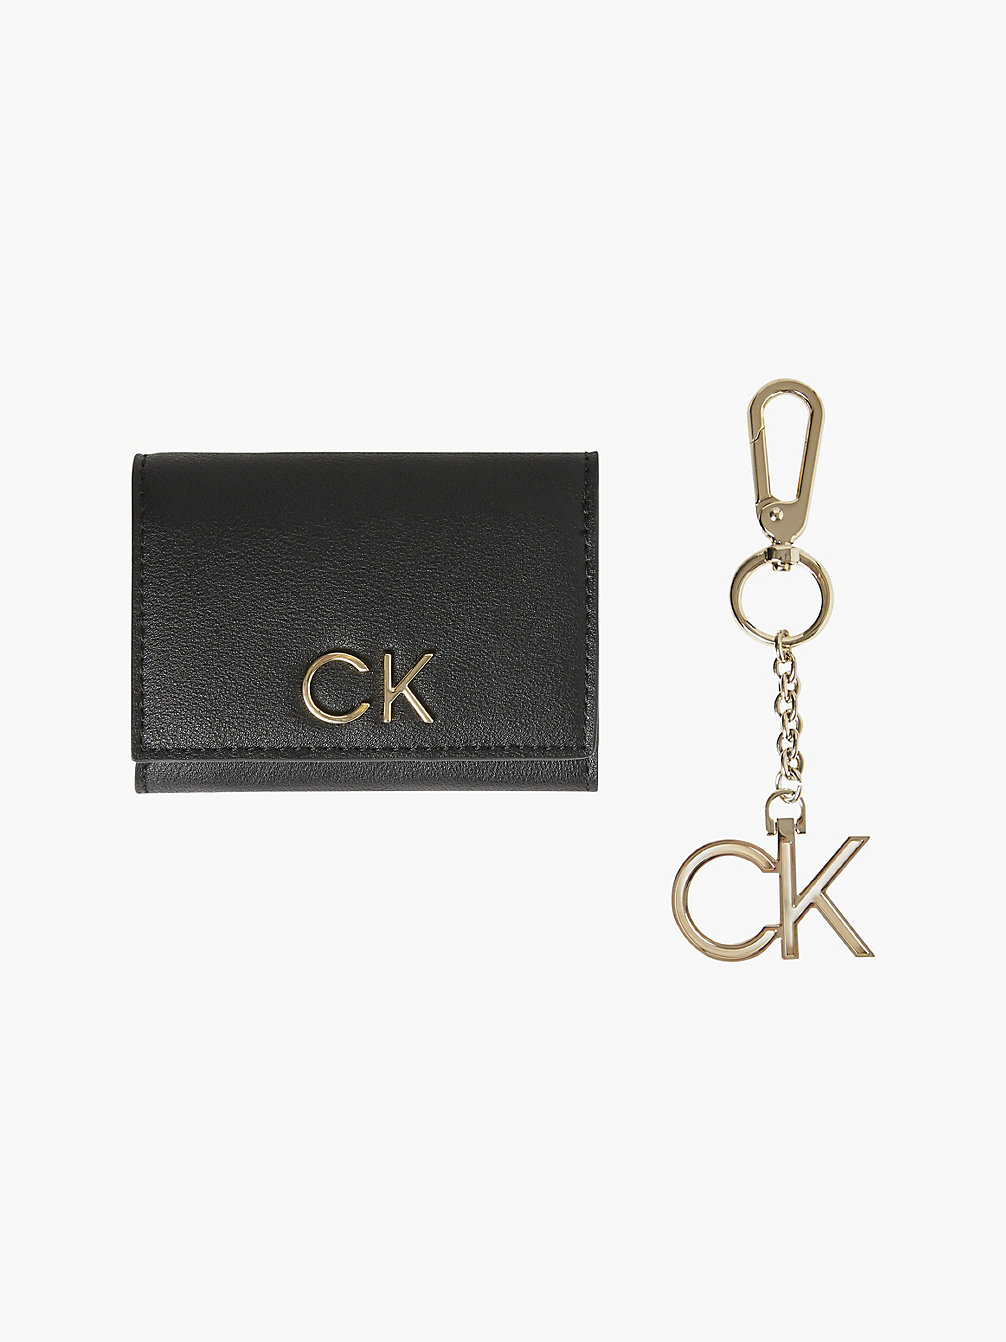 CK BLACK Geschenkset Mit Portemonnaie Mit Rfid-Schutz Und Schlüsselanhänger undefined Damen Calvin Klein